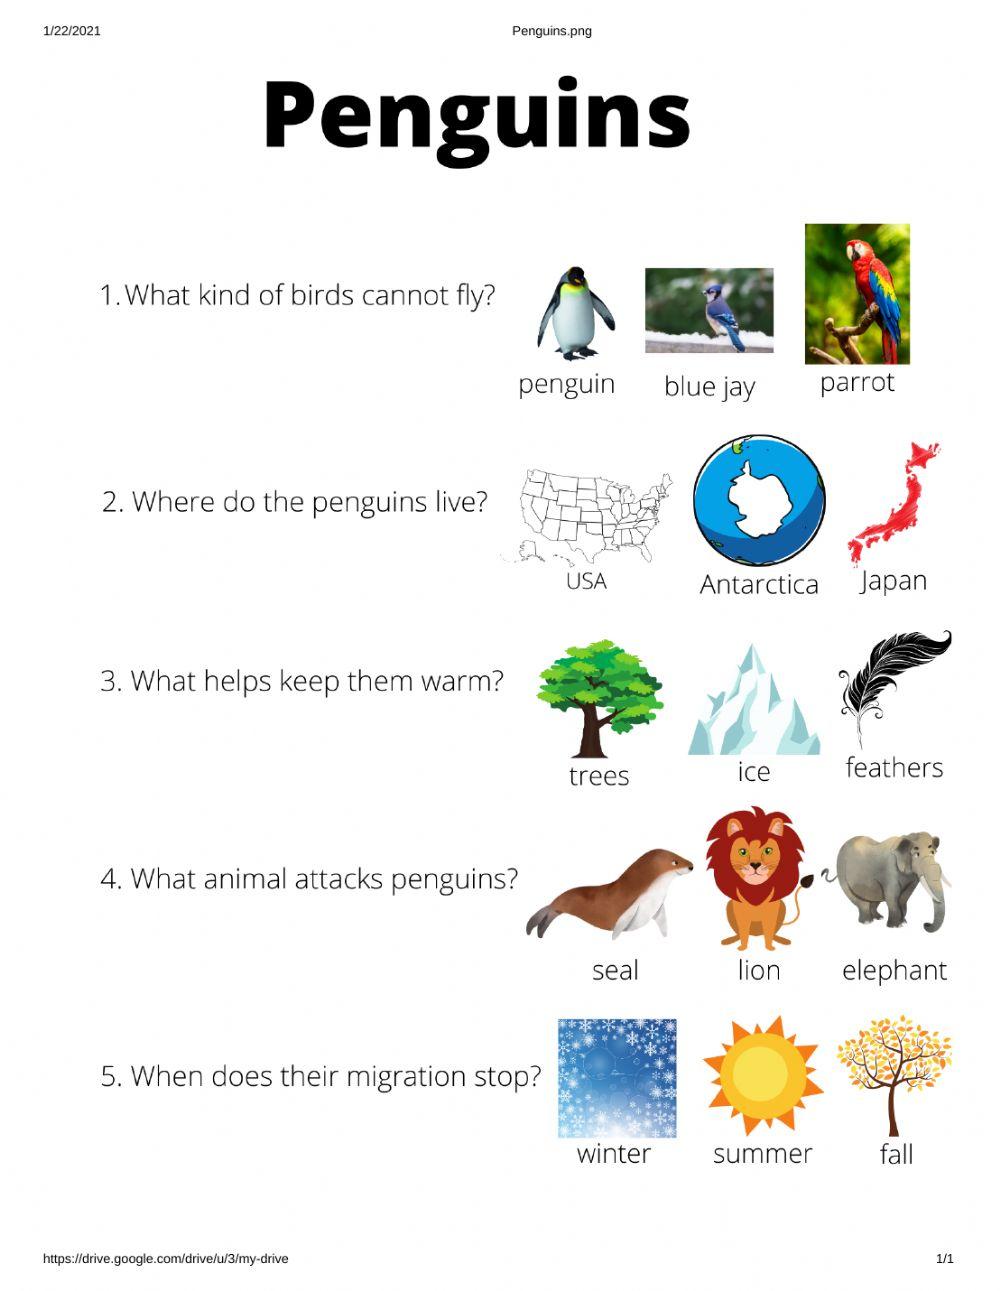 Penguin questions